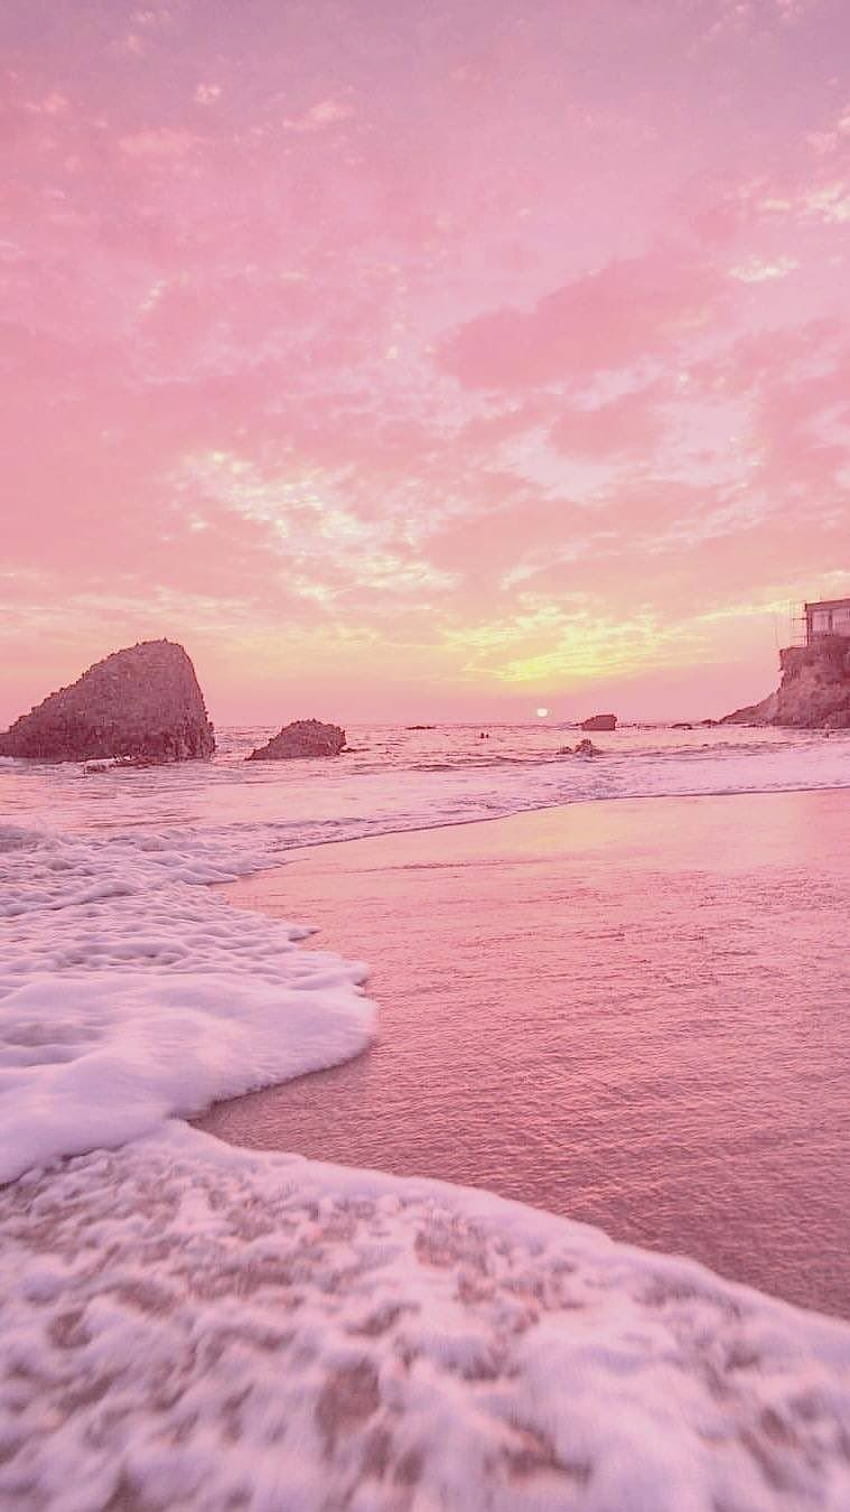 Atardecer con tonos pastel, rosa y amarillo Vibes 90s Retro - iPhone 7, Pastel Beach fondo de pantalla del teléfono